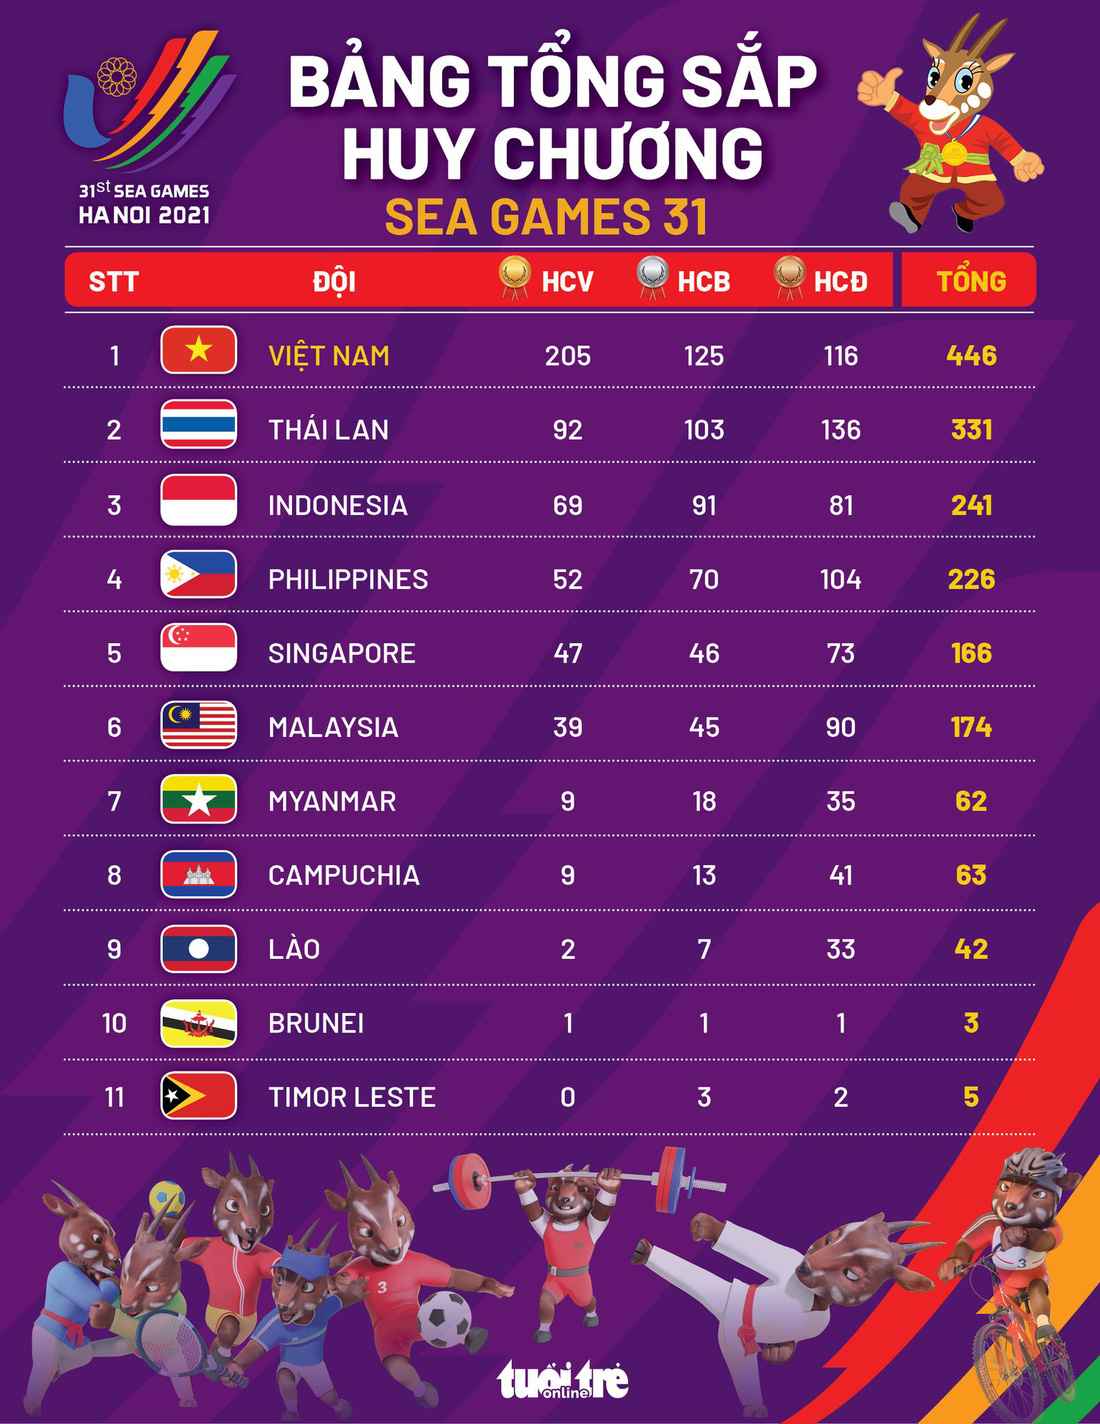 Bảng tổng sắp huy chương chung cuộc SEA Games 31: Việt Nam đoạt 205 HCV, 446 huy chương các loại - Ảnh 1.